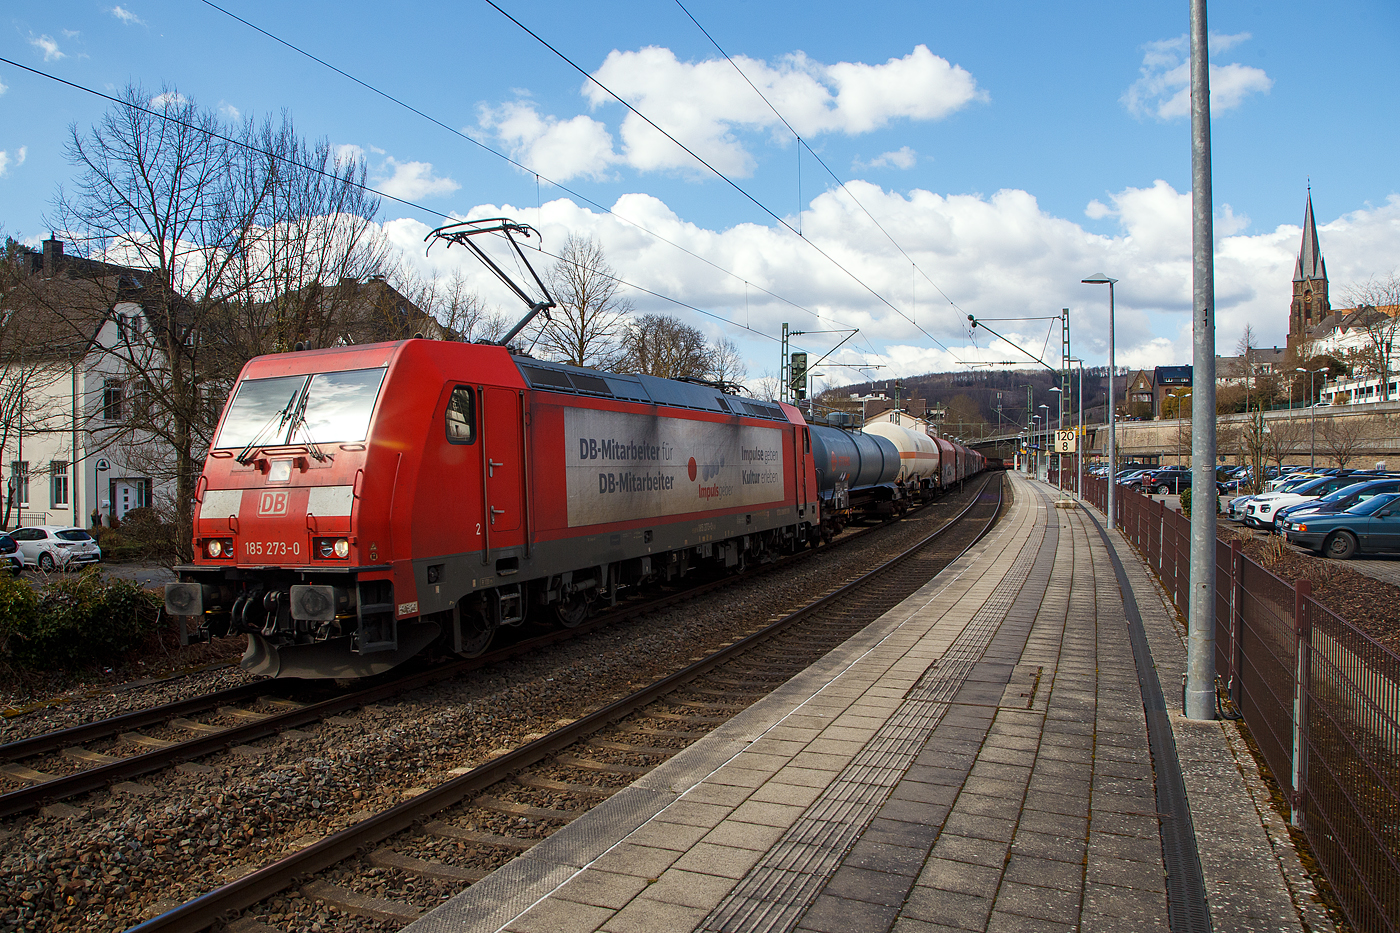 Die DB Cargo 185 273-0 (91 80 6185 273-0 D-DB), mit Werbung „Impulsgeber, DB-Mitarbeiter für DB-Mitarbeiter“, fährt am 19.03.2021 mit einem gemischten Güterzug durch den Bahnhof Kirchen (Sieg) in Richtung Köln.

Die TRAXX F140 AC2 wurde 2006 bei Bombardier in Kassel unter der Fabriknummer 34130 gebaut. Sie hat die Zulassungen für Deutschland und Österreich.